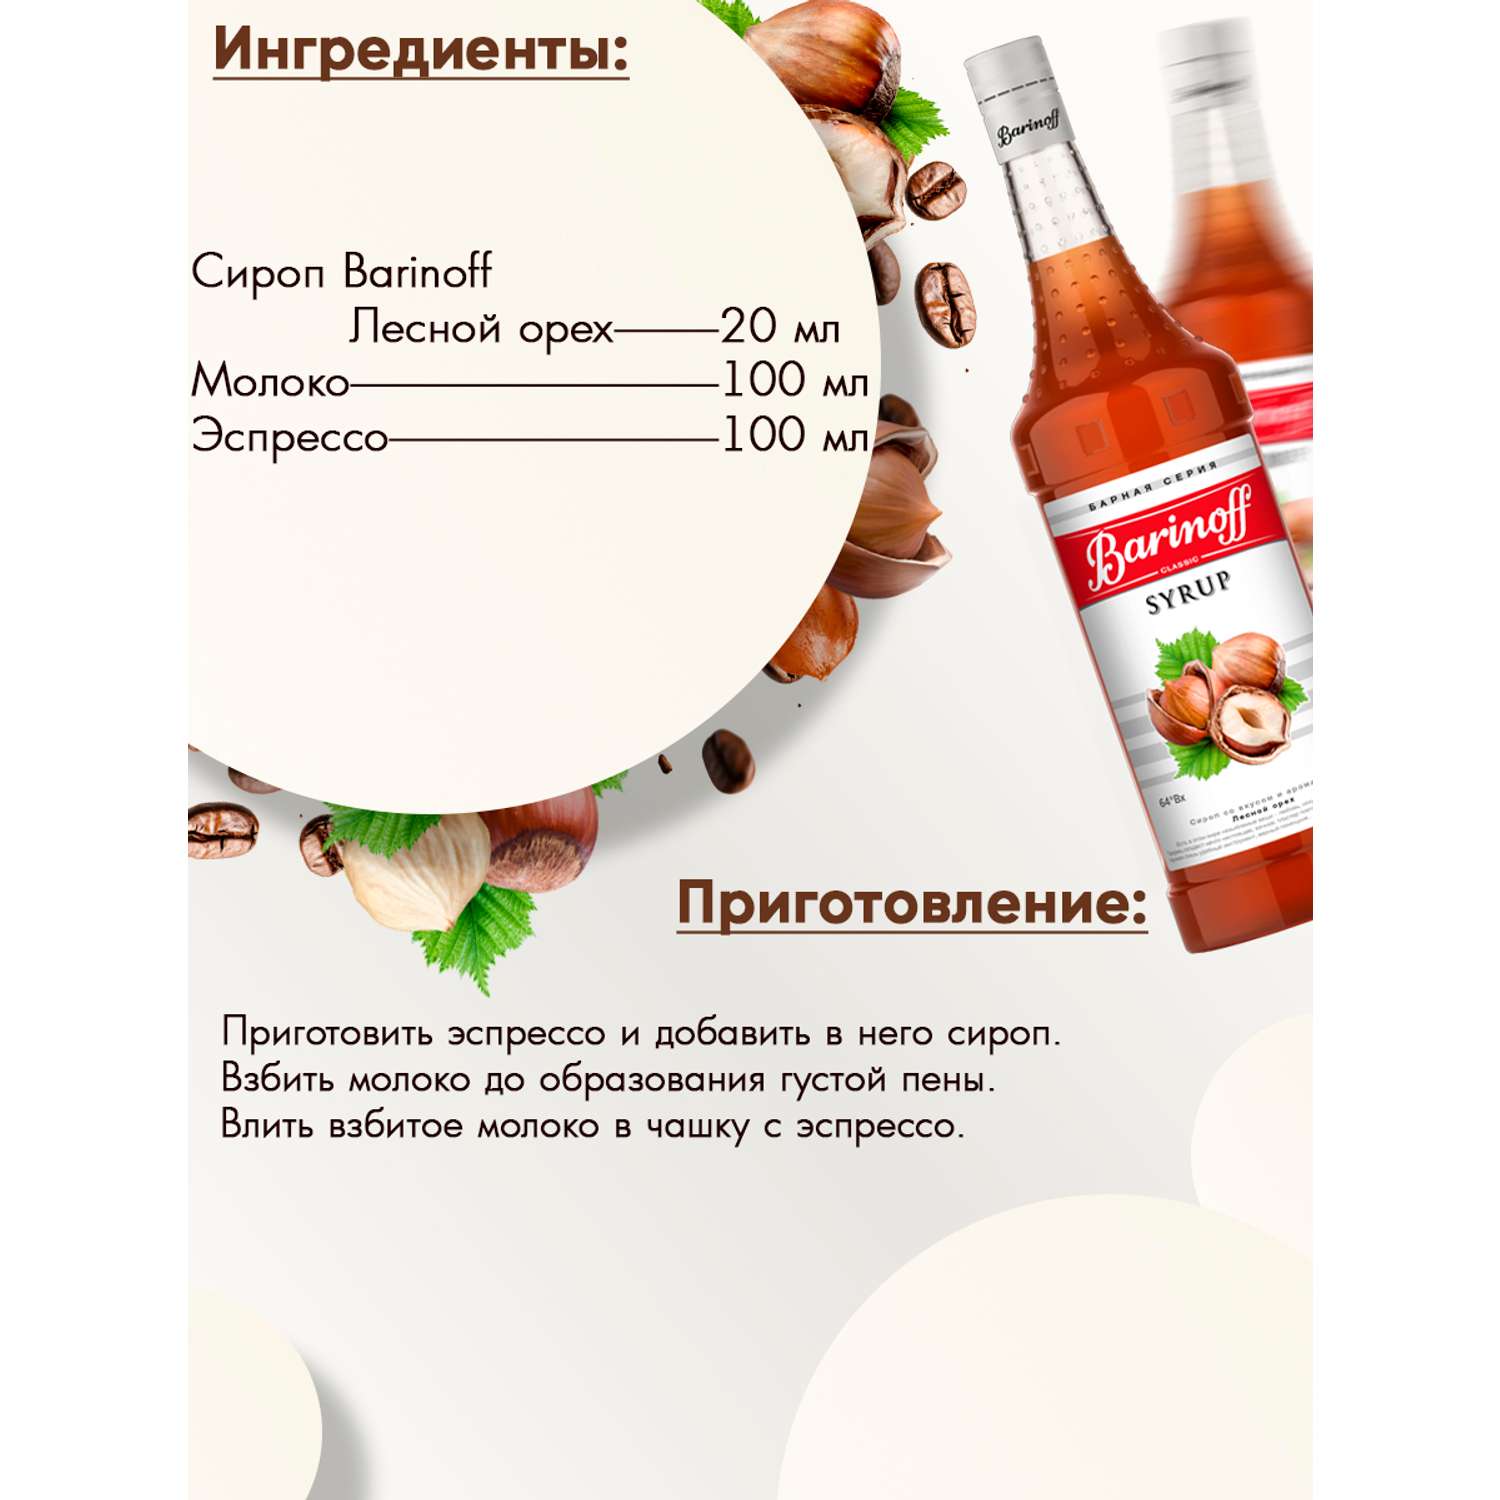 Сироп Barinoff Лесной орех для кофе и коктелей 1л - фото 3